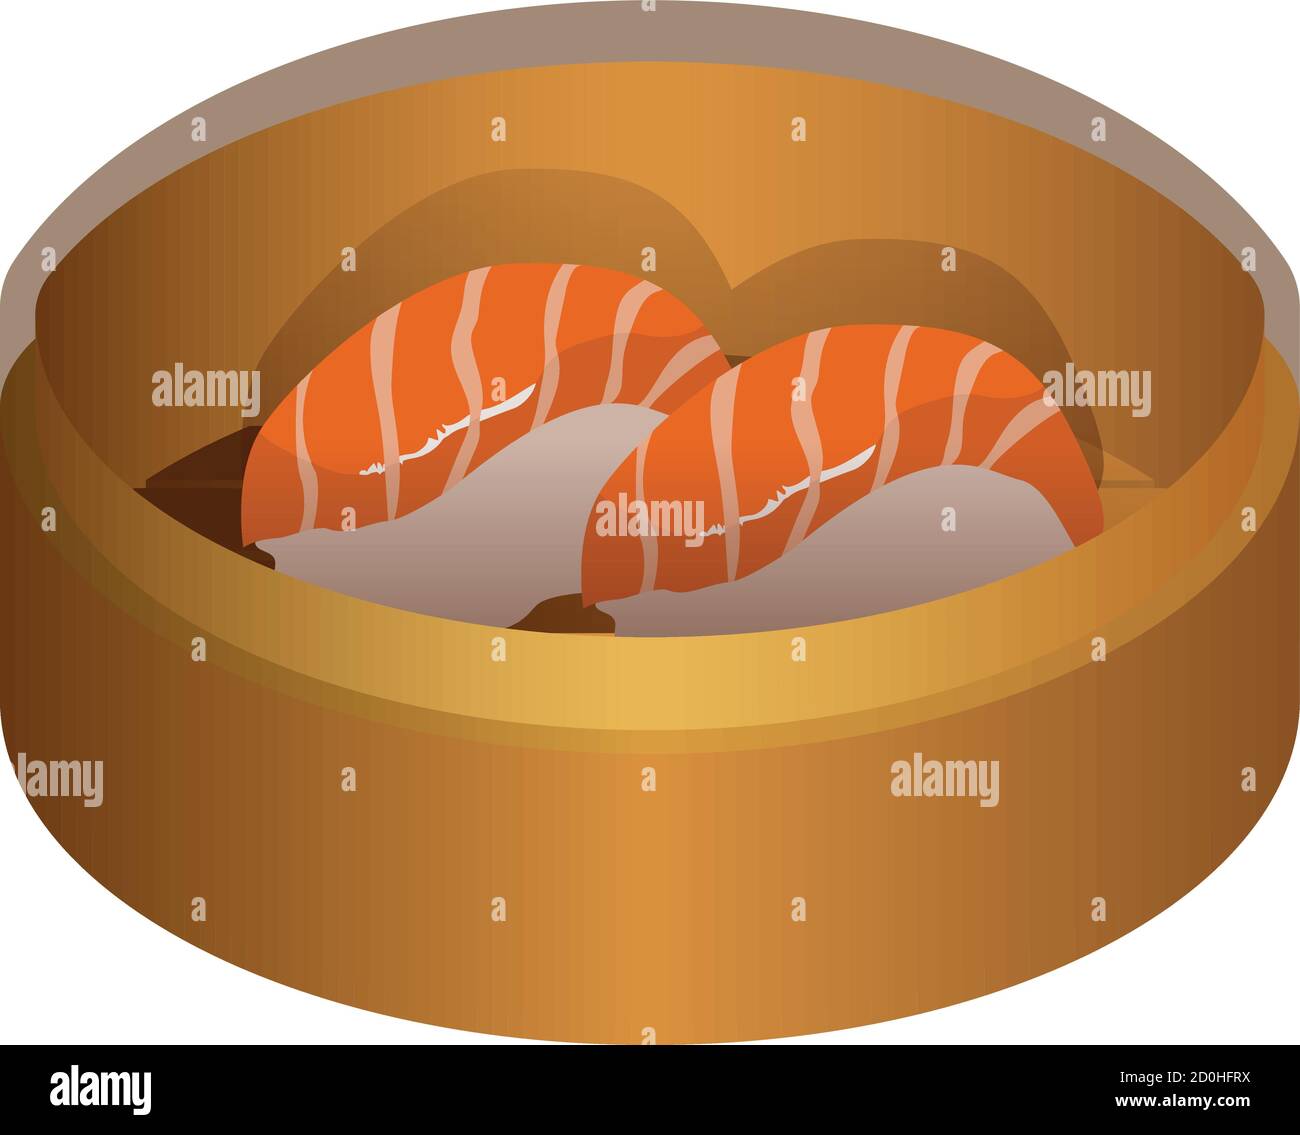 Saumon ilustración de la comida japonesa sobre la tradición estilo asiático Ilustración del Vector